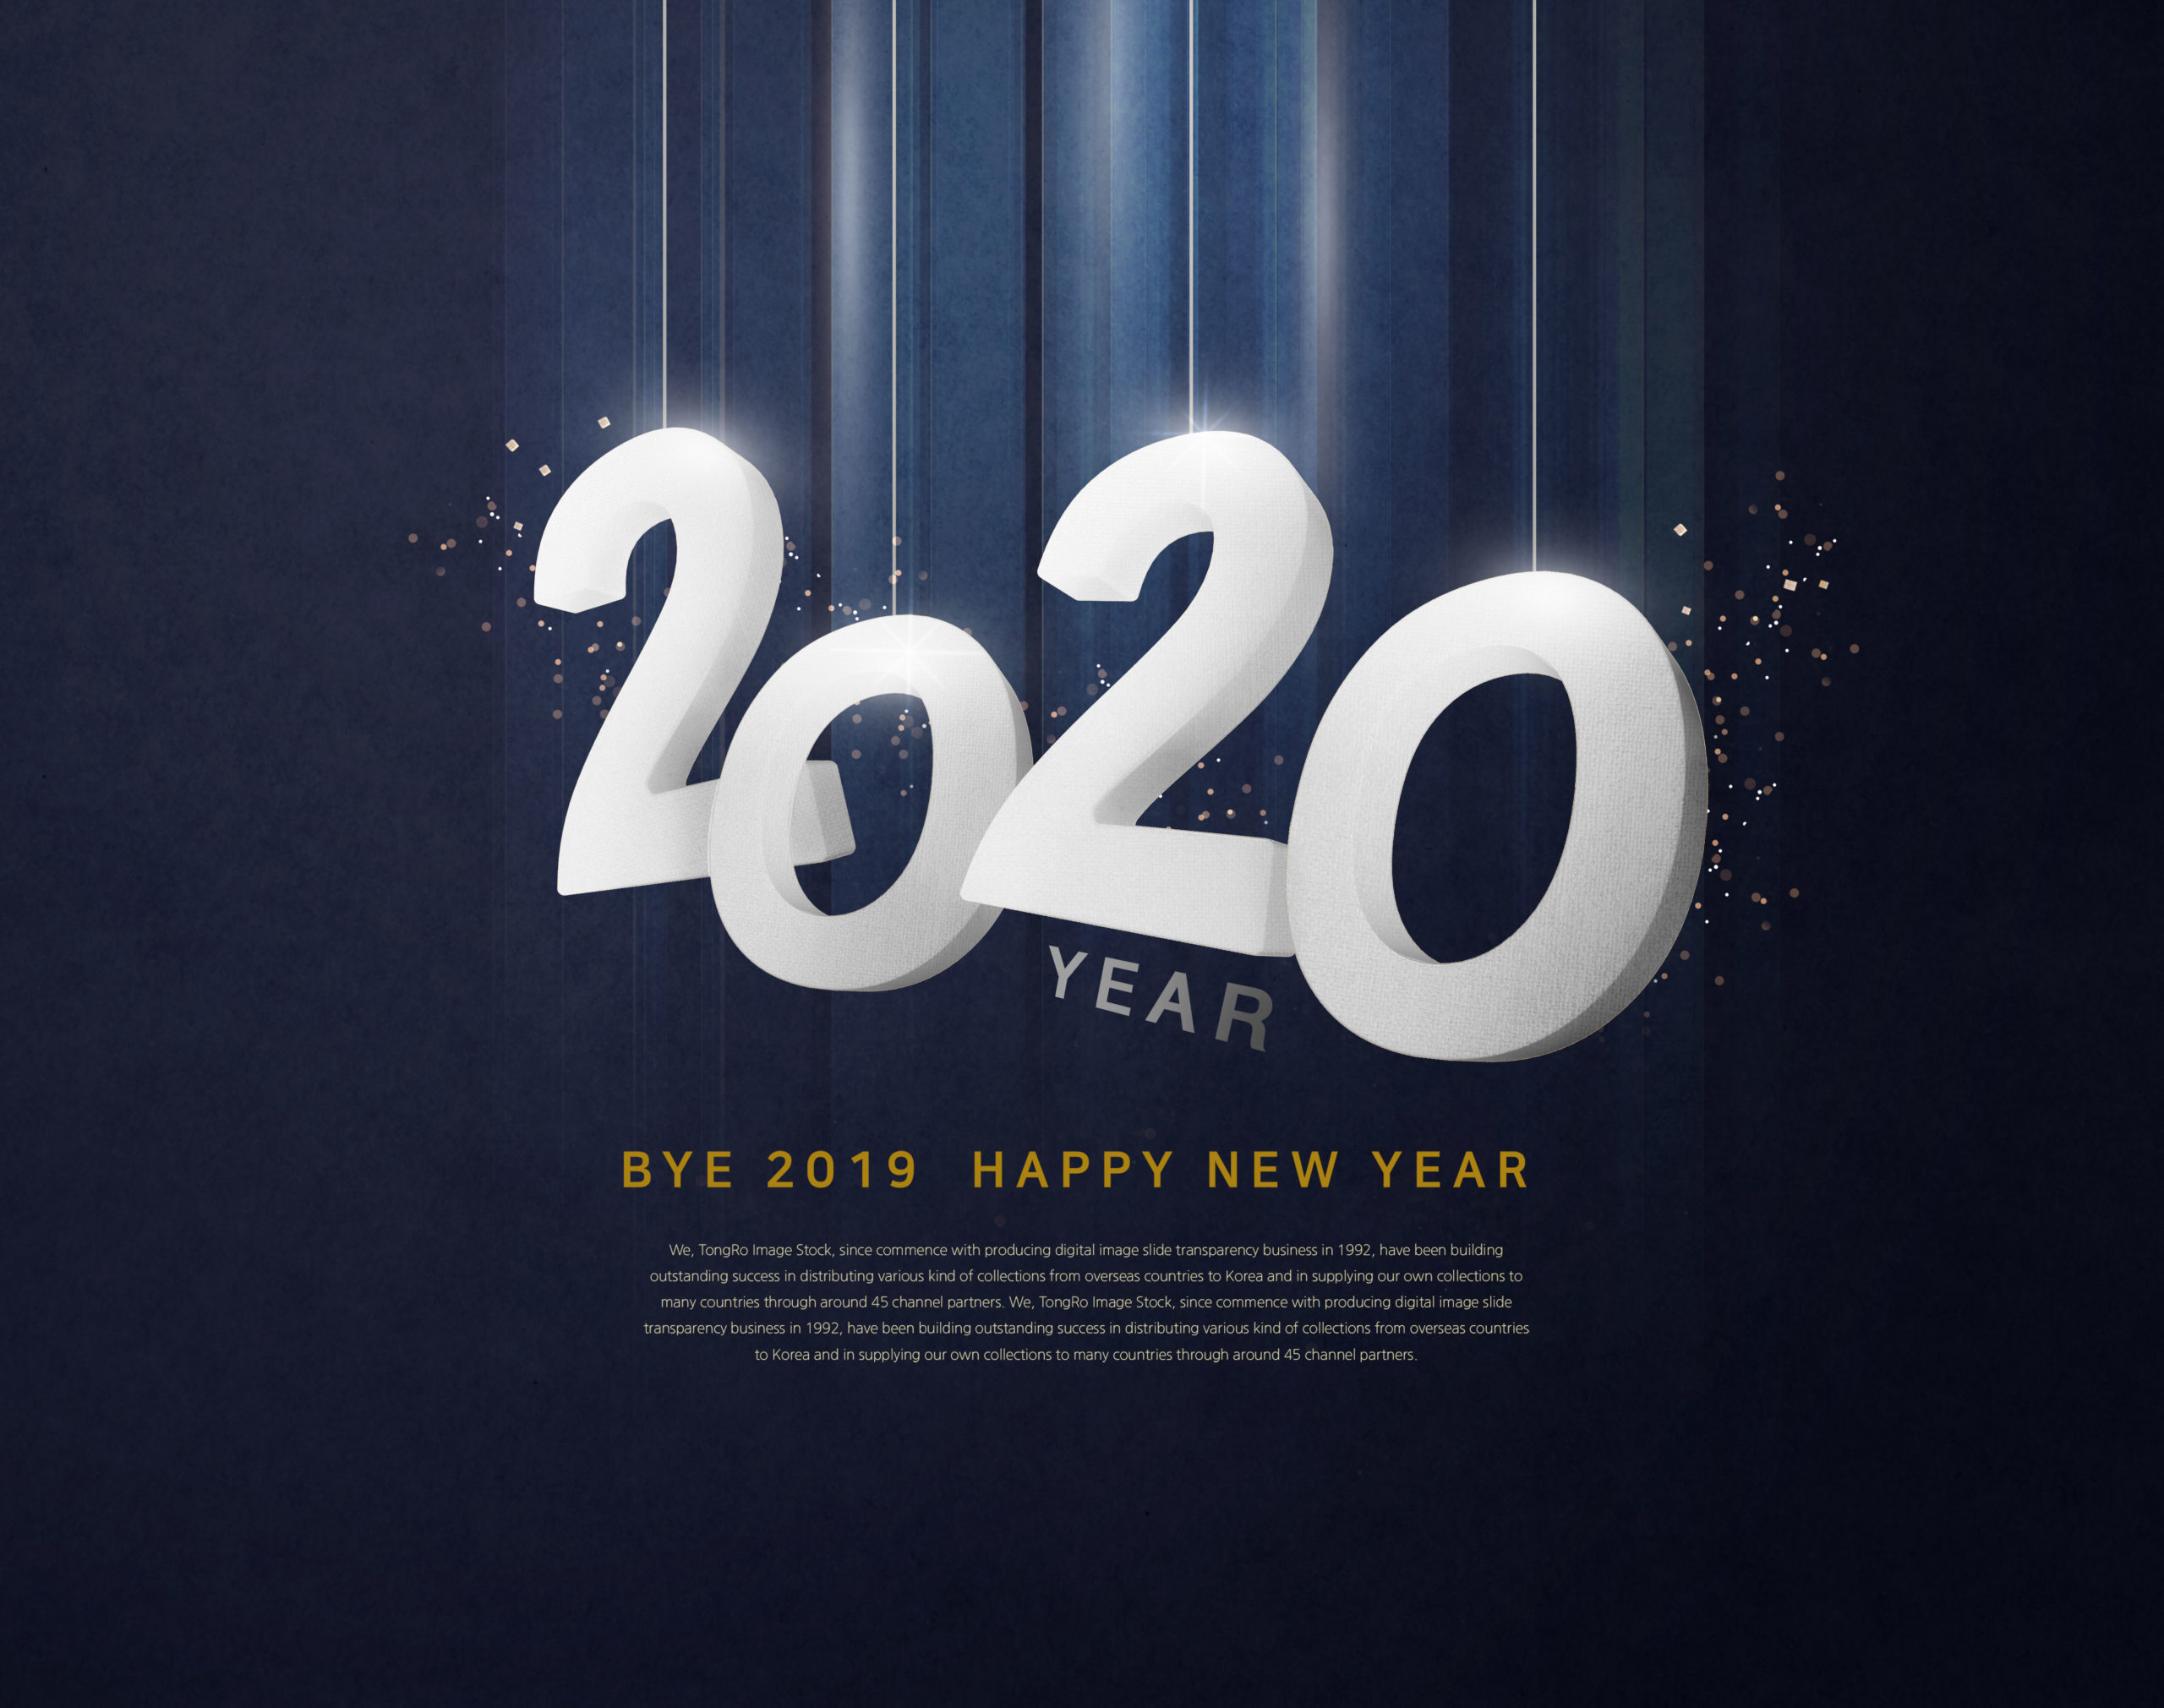 吊挂的2020年3D白色字体新年海报/传单设计素材插图